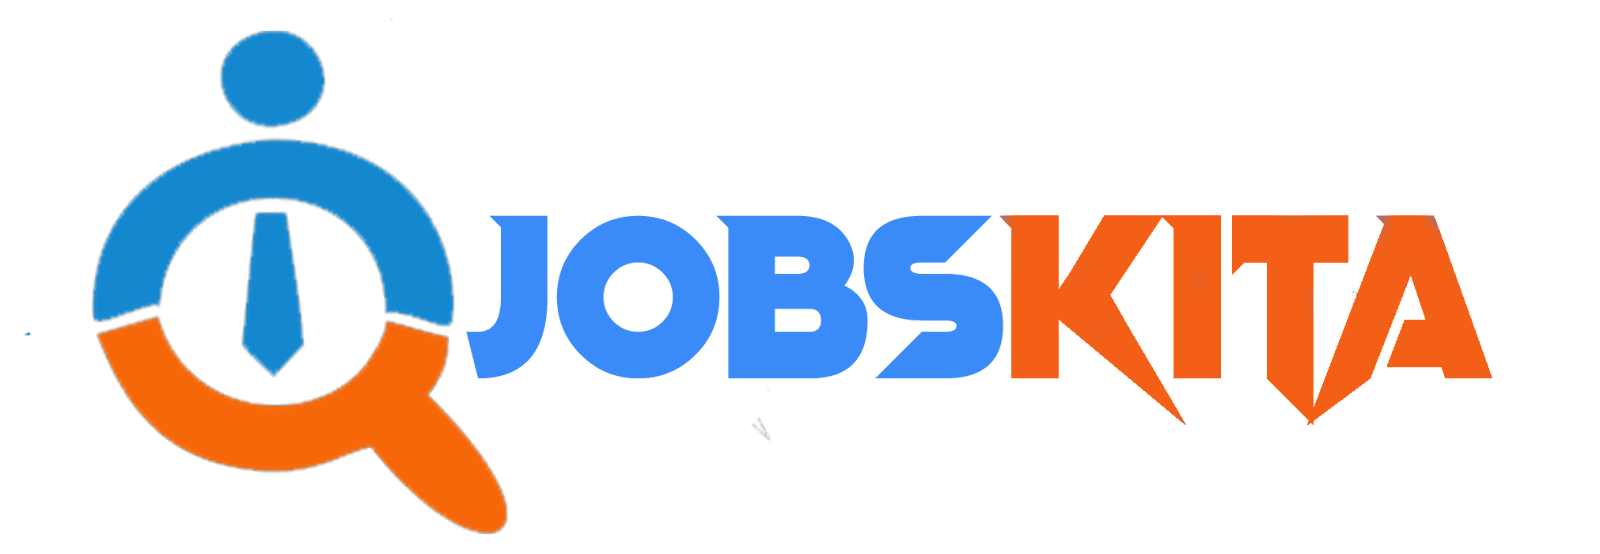 Jobskita | Situs Lowongan Kerja Indonesia